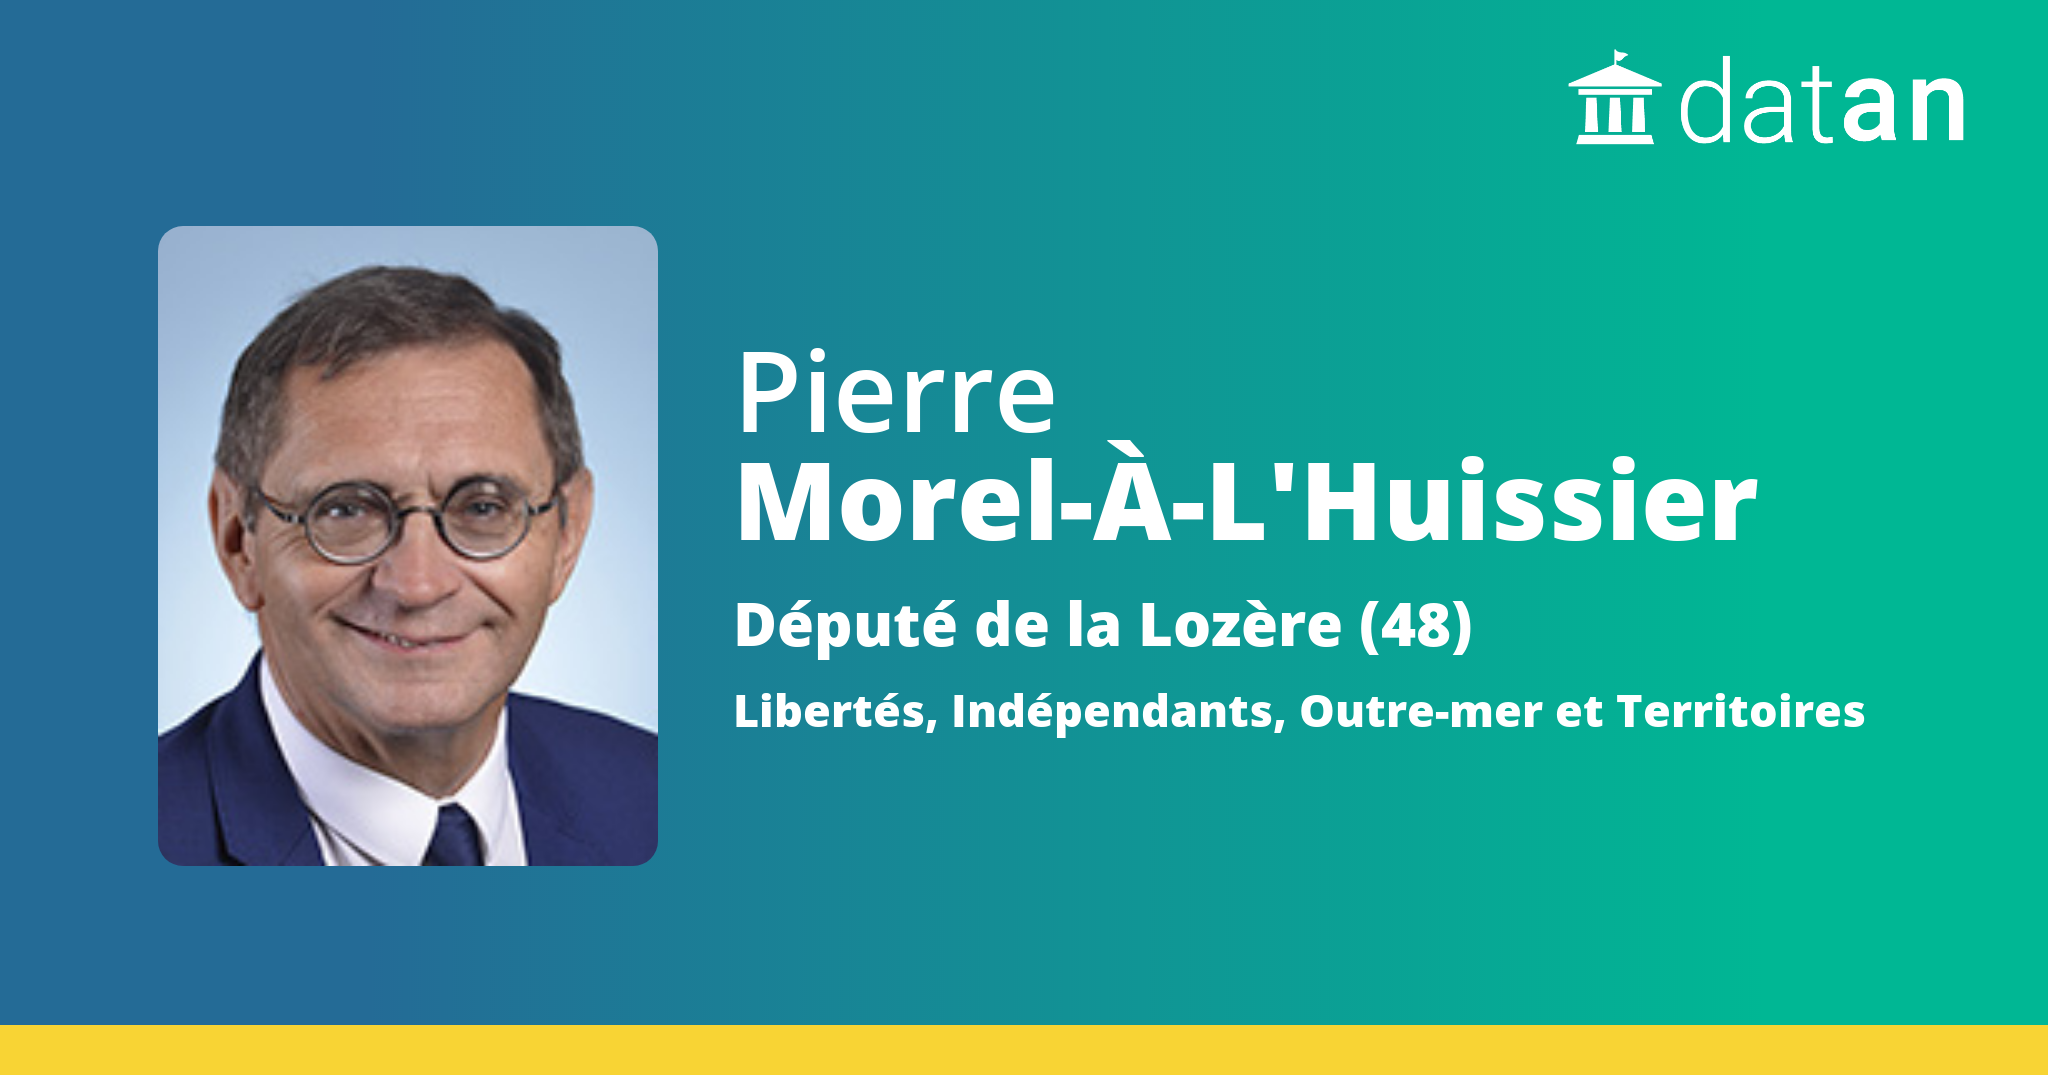 Pierre Morel-À-L'Huissier - Activité Parlementaire | Datan